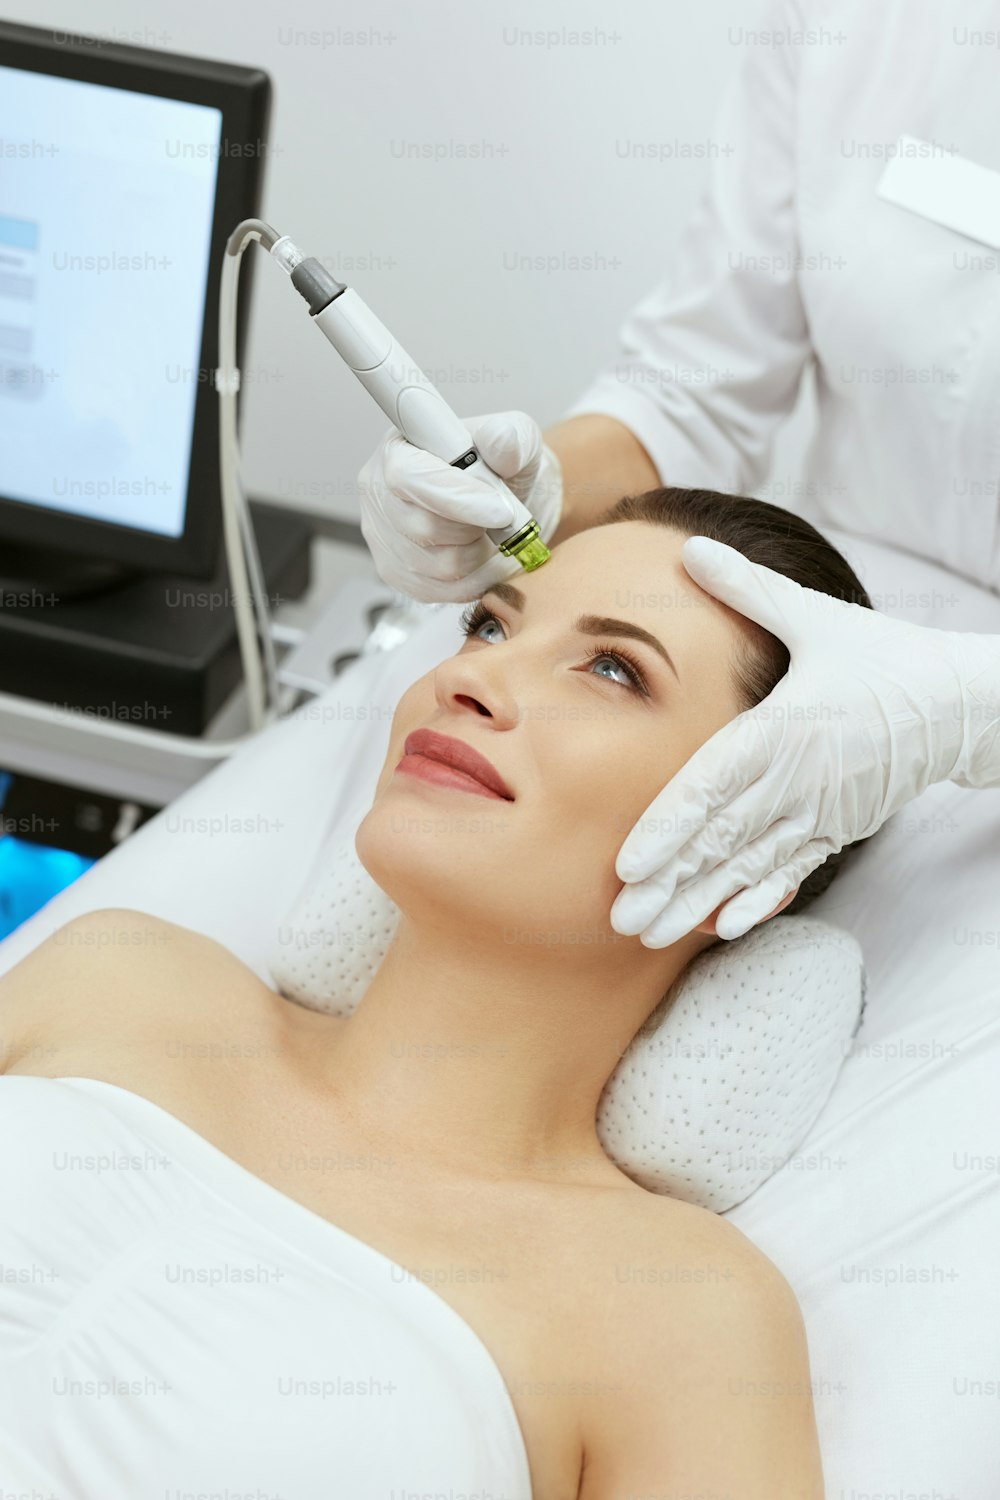 Gesichtspflege. Frau erhält Gesichts-Hydro-Peeling-Mikrodermabrasionsbehandlung in der Kosmetik-Schönheitsklinik. Hohe Auflösung